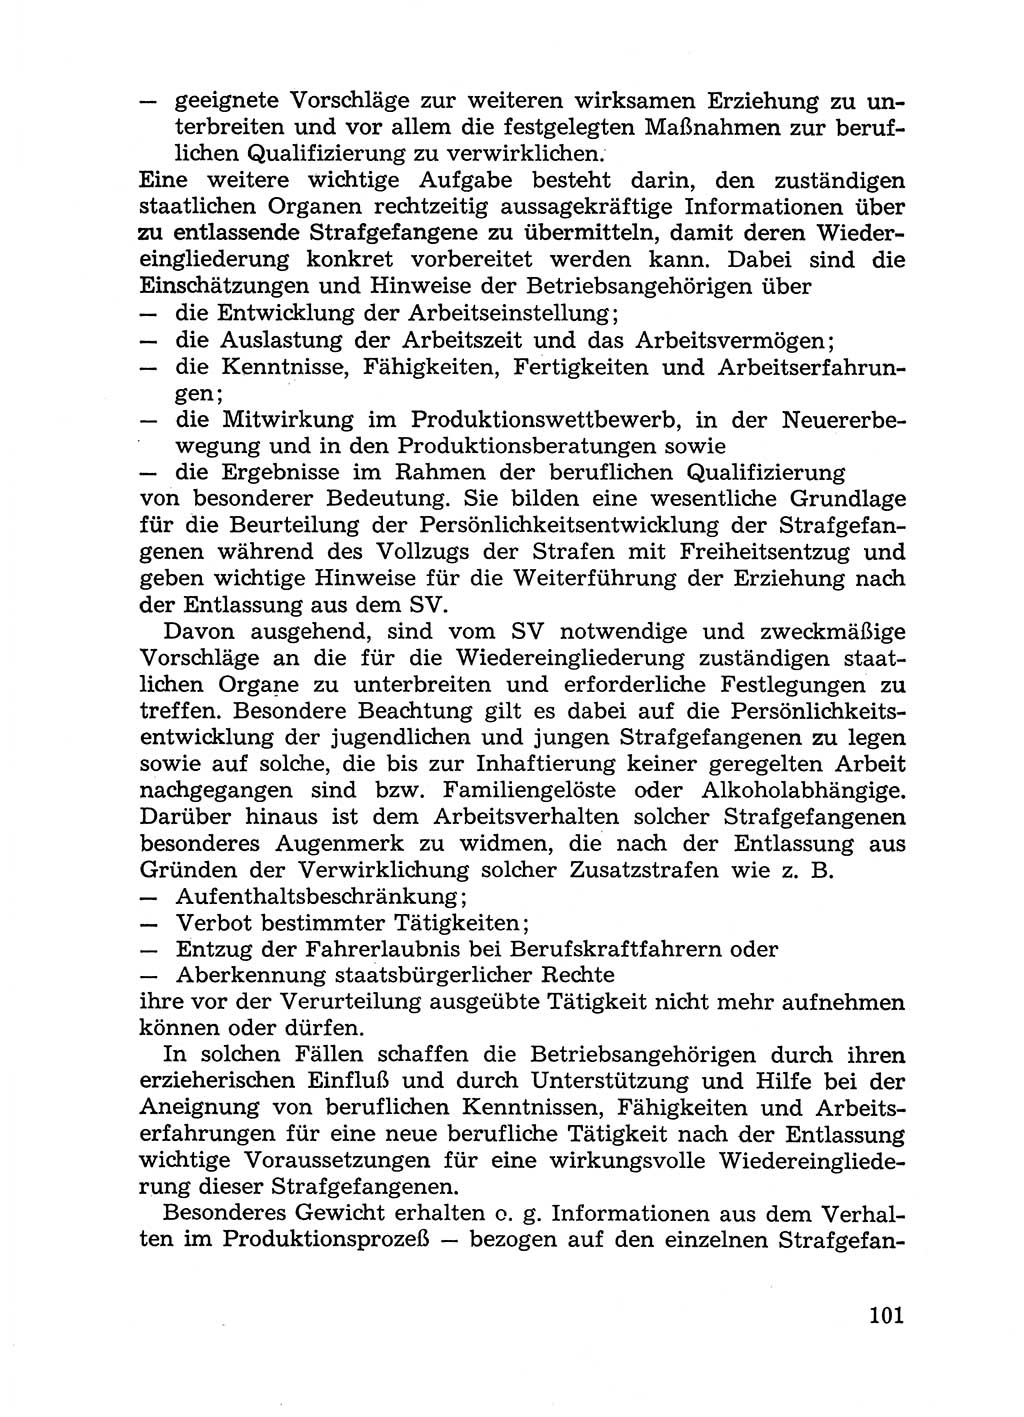 Handbuch für Betriebsangehörige, Abteilung Strafvollzug (SV) [Ministerium des Innern (MdI) Deutsche Demokratische Republik (DDR)] 1981, Seite 101 (Hb. BA Abt. SV MdI DDR 1981, S. 101)